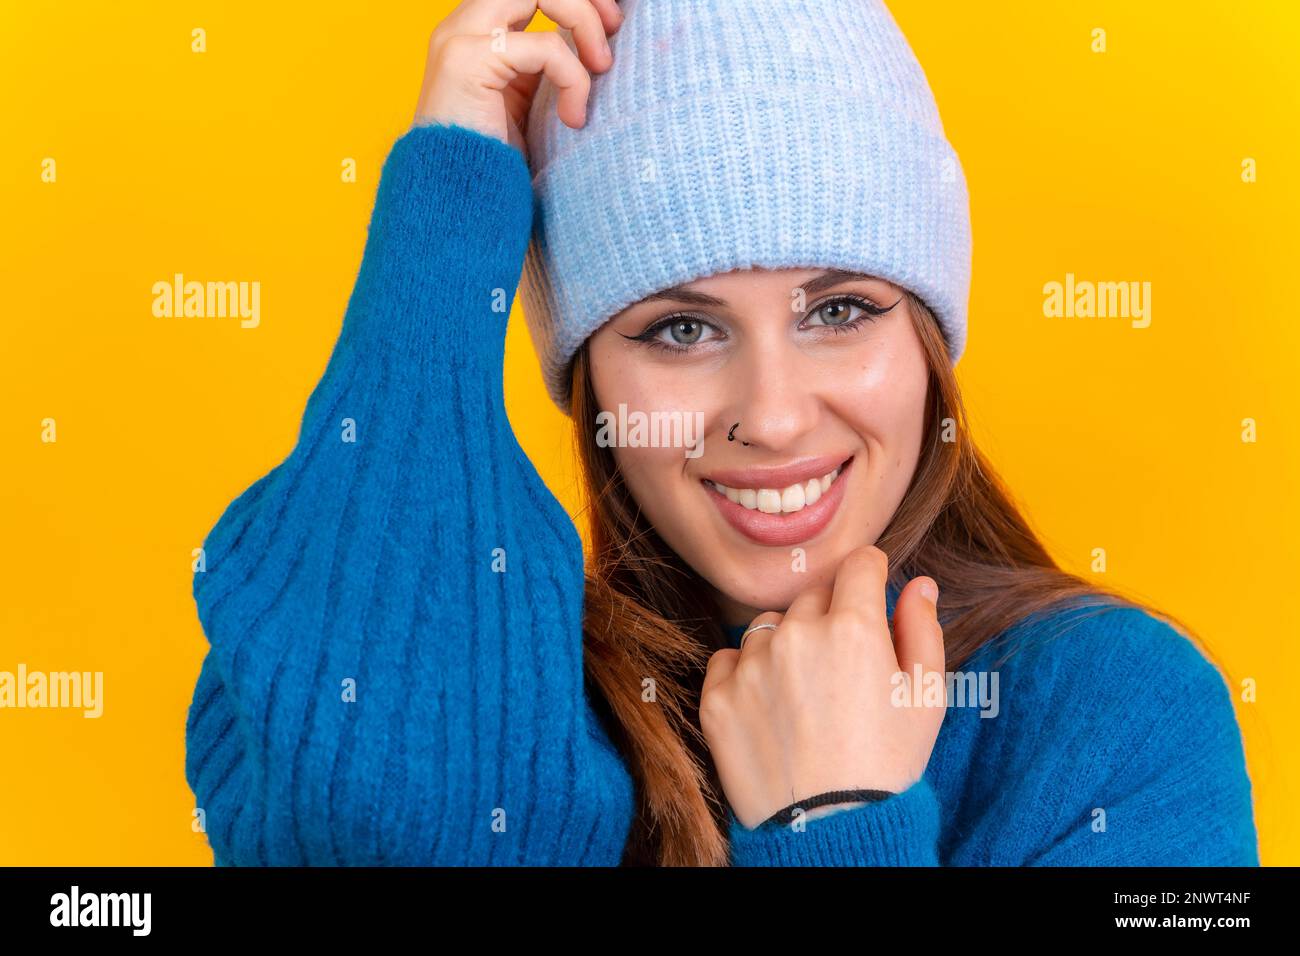 Nahaufnahme eines jungen Weißen in blauem Wollpullover, isoliert auf dem Hintergrund, lächelnd Stockfoto